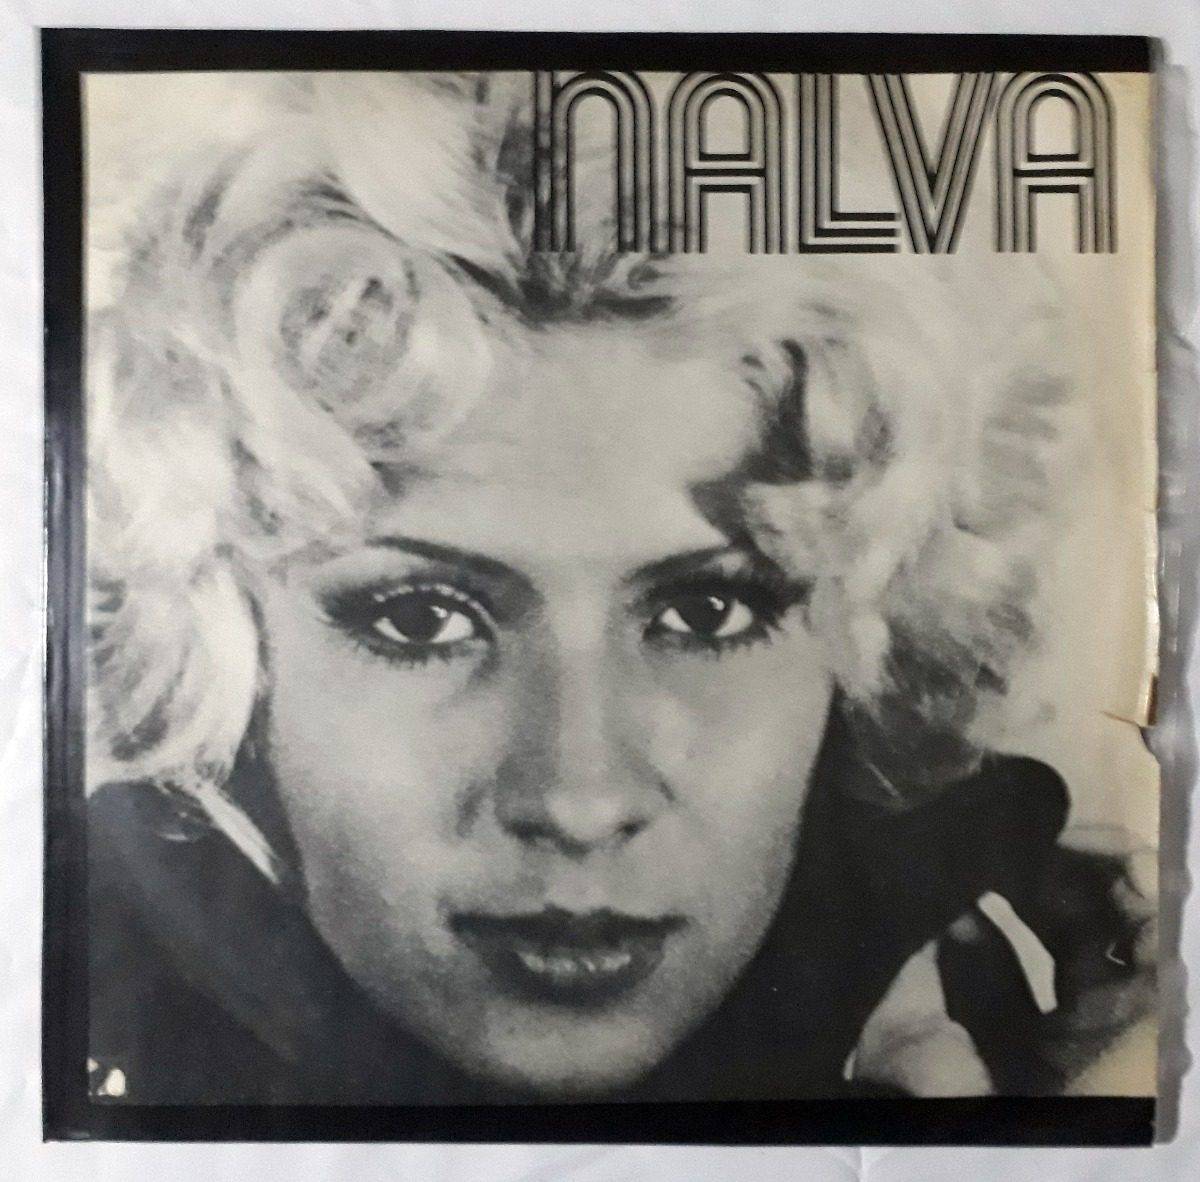 Nalva (1971)